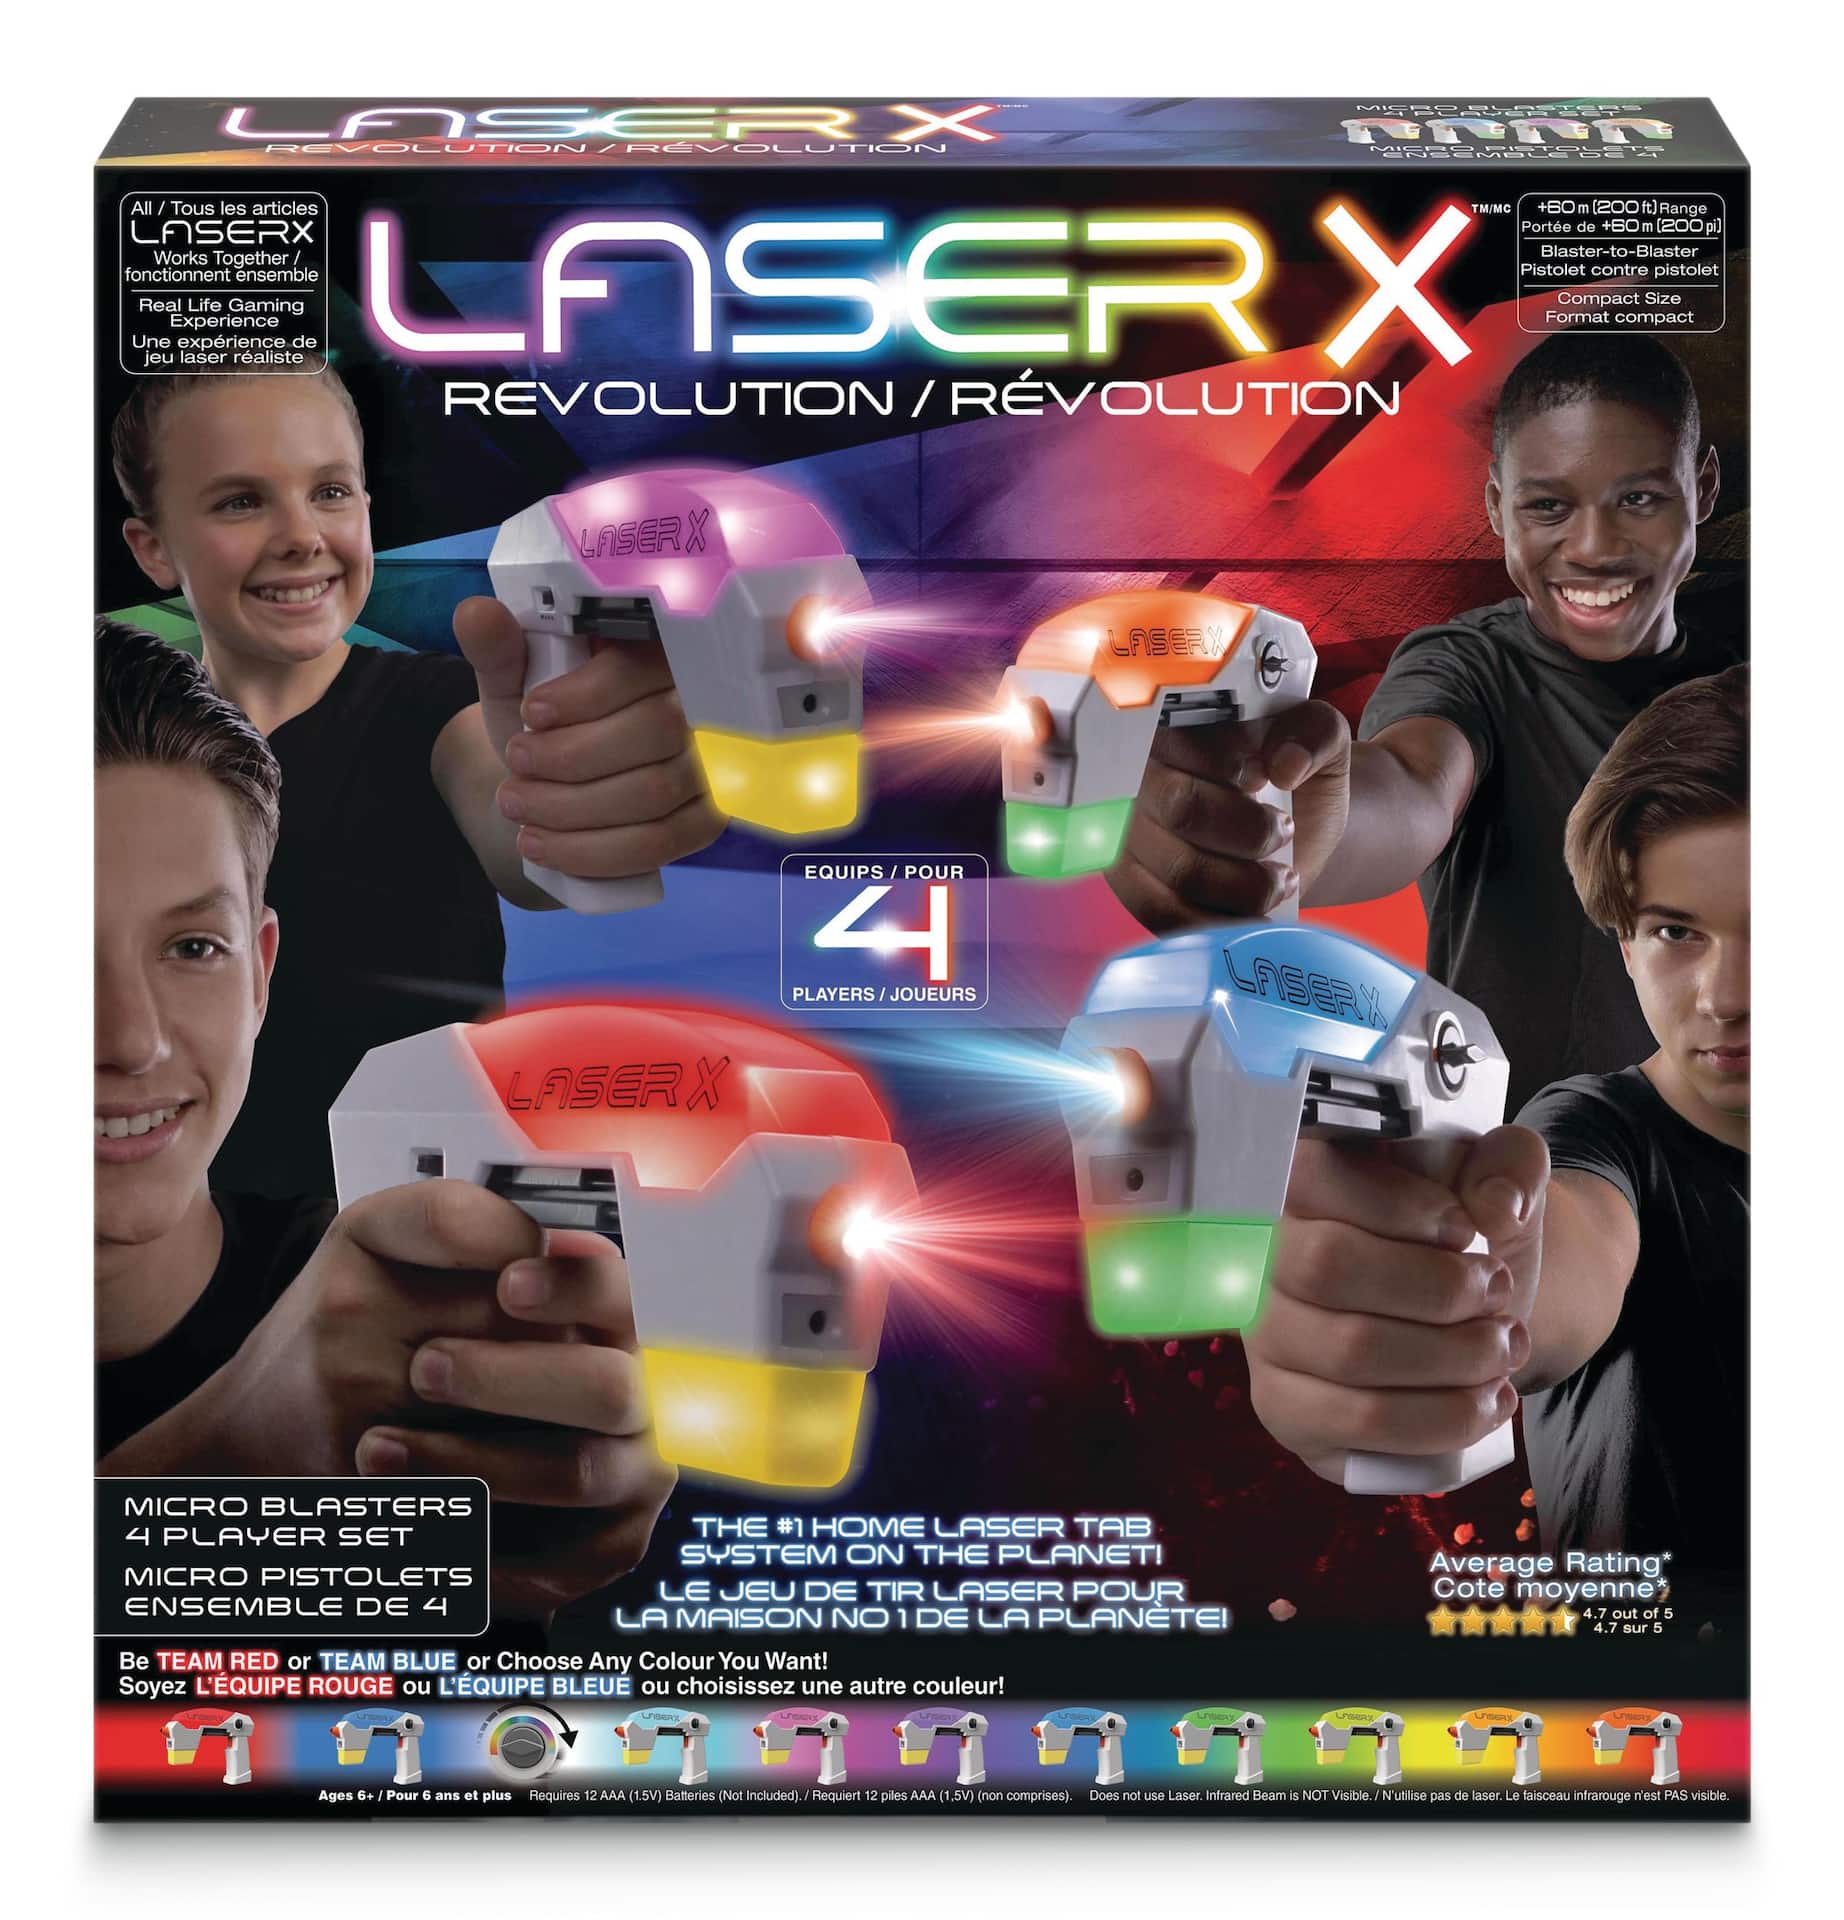 Laser X Evolution Micro Blaster to Blaster by Laser X at Fleet Farm